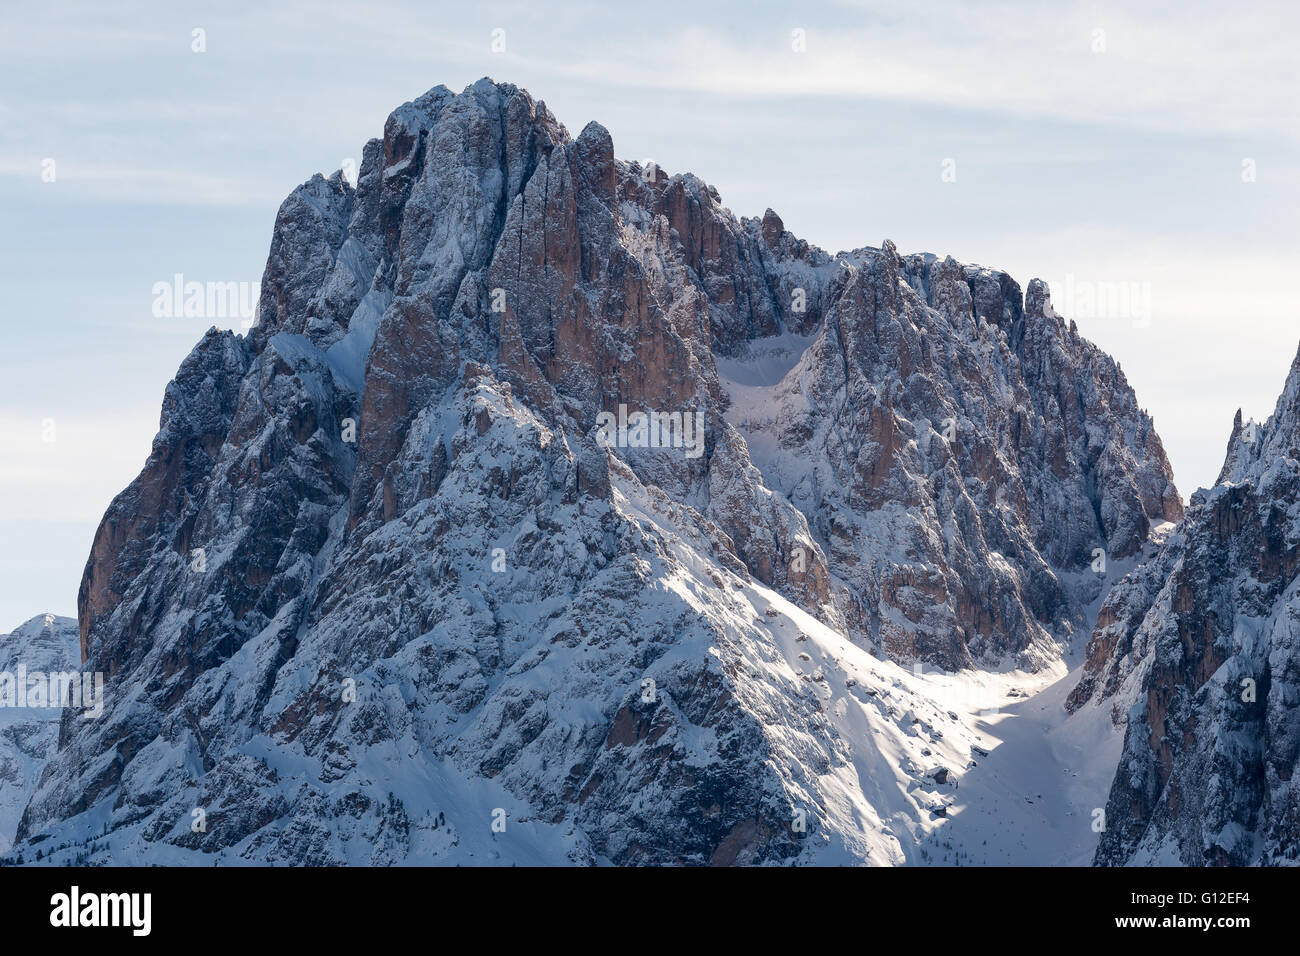 The Sassolungo mountain peak. The Gardena Dolomites in winter season. Italian Alps. Europe. Stock Photo